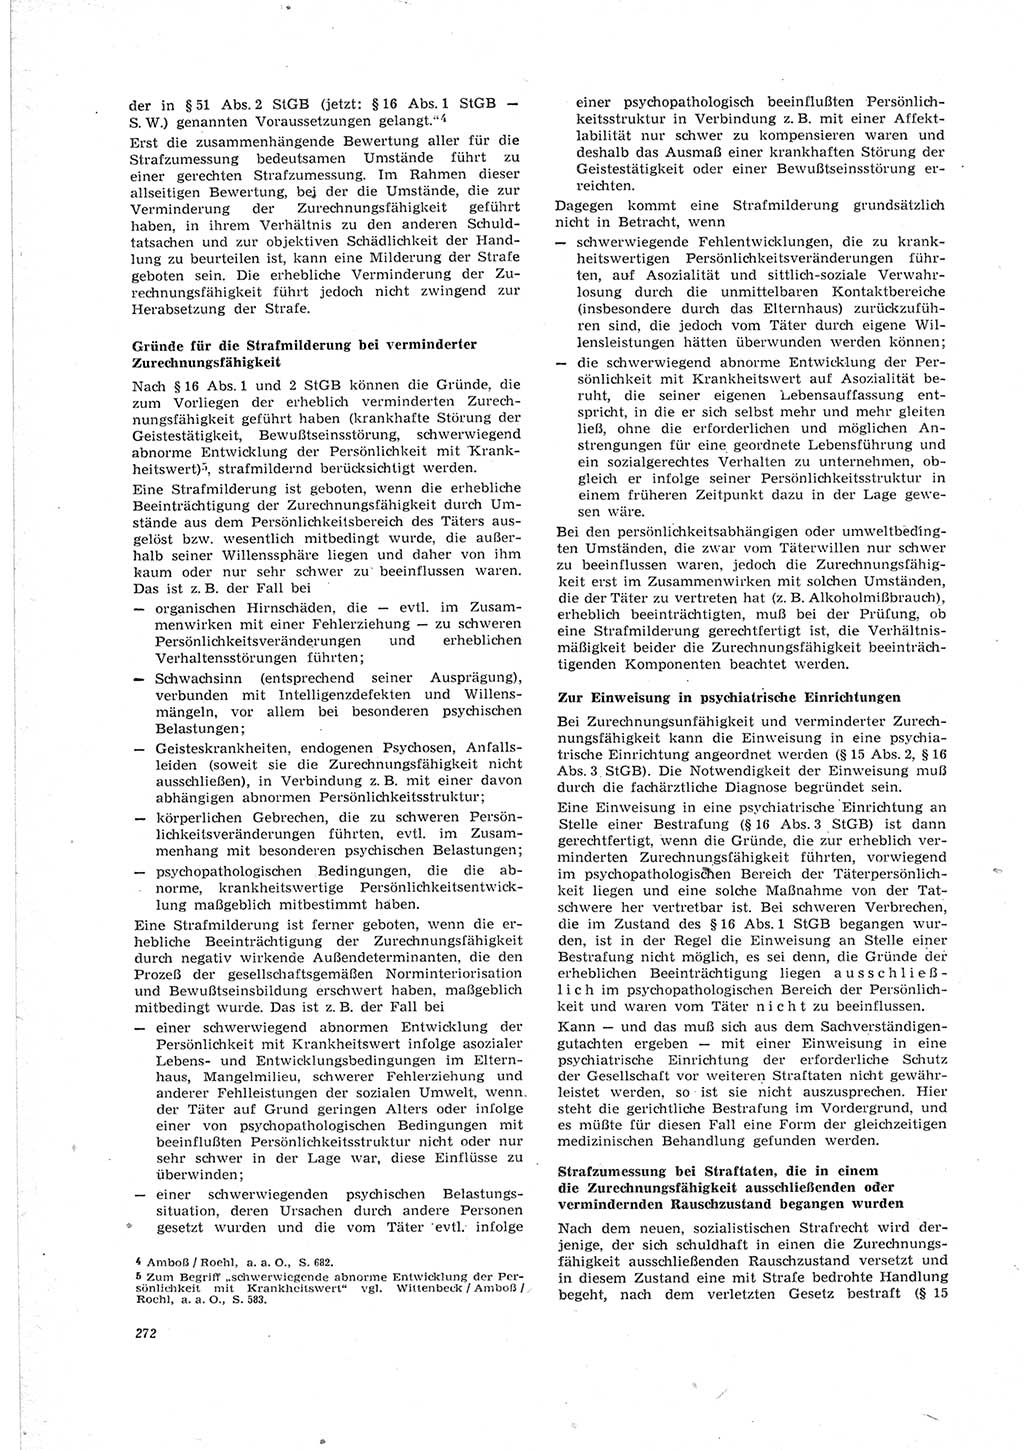 Neue Justiz (NJ), Zeitschrift für Recht und Rechtswissenschaft [Deutsche Demokratische Republik (DDR)], 23. Jahrgang 1969, Seite 272 (NJ DDR 1969, S. 272)